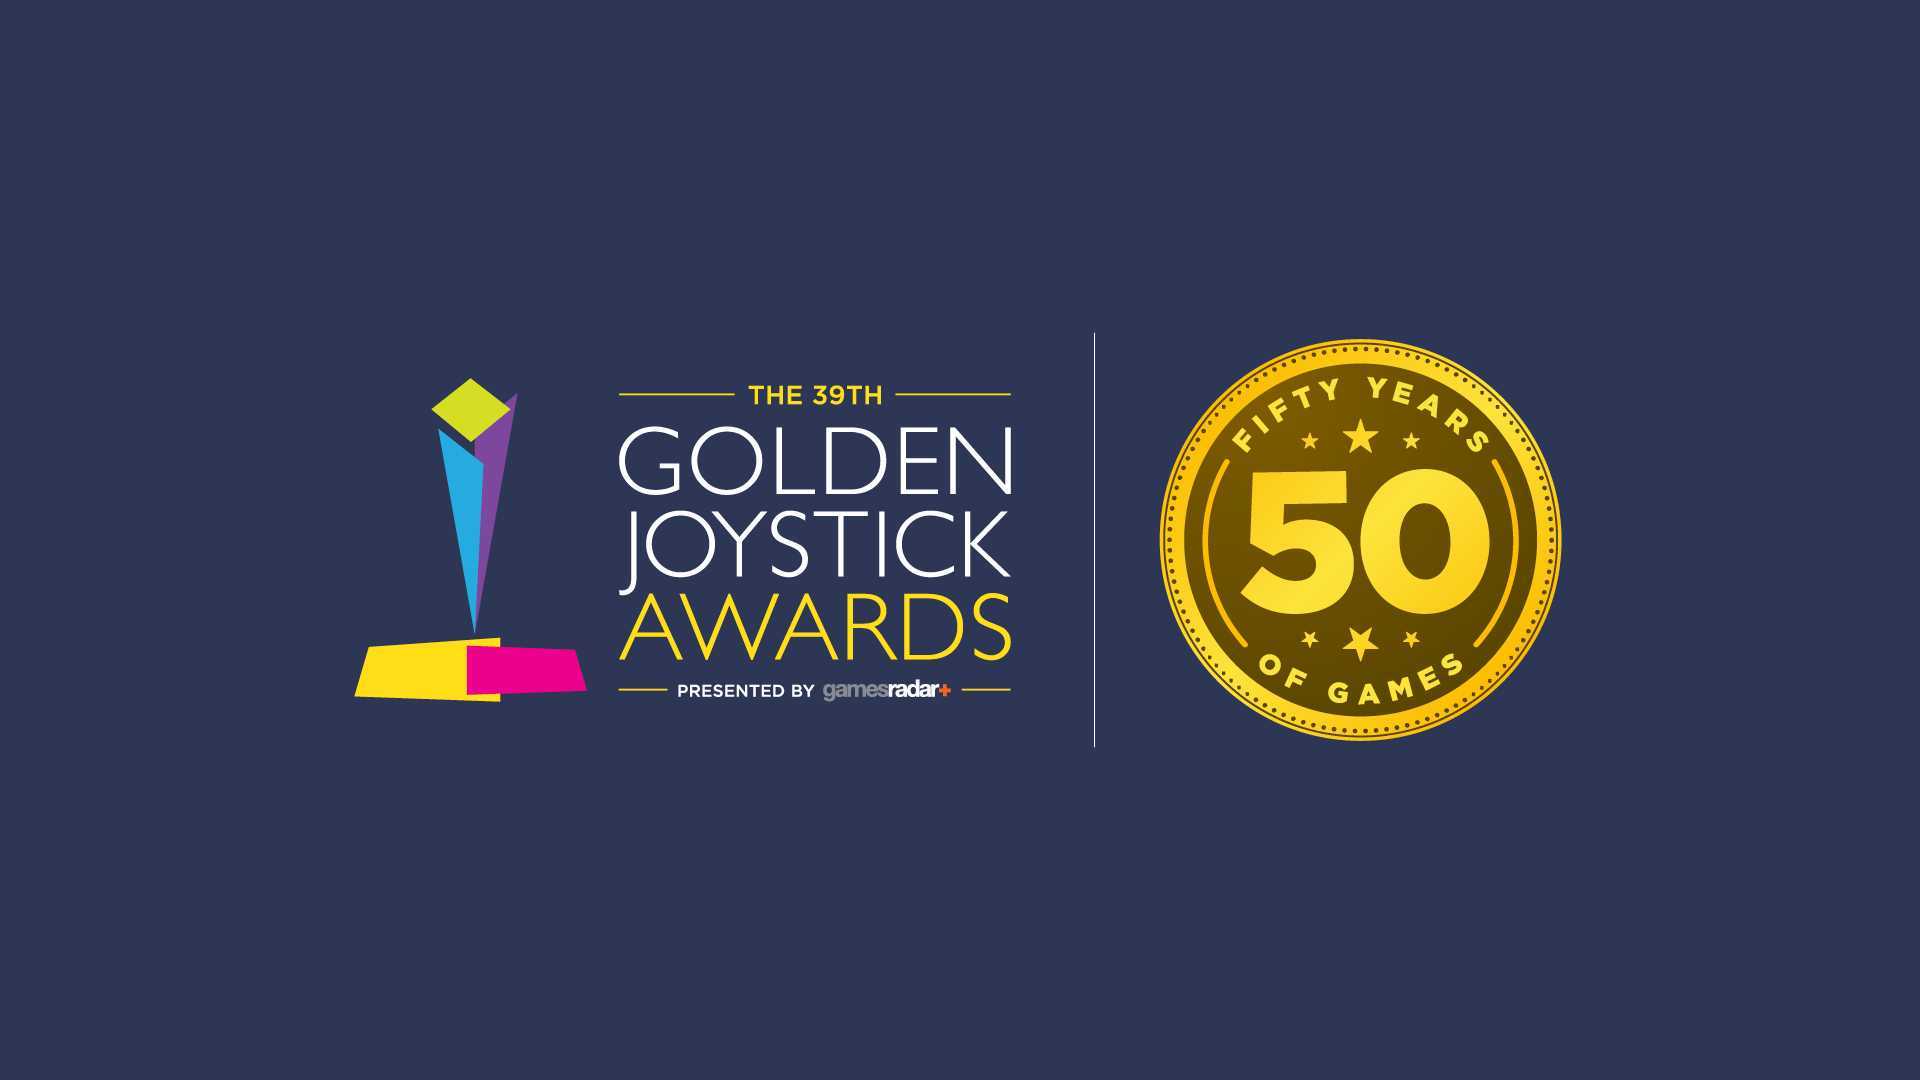 Ночью прошла церемония Golden Joystick Awards 2021 Мероприятие получилось эпичным: организаторы наградили лучшие проекты года, выбрали главную игру всех времён и презентовали любопытные новинки В этом материале мы расскажем обо всём, что было на церемонии